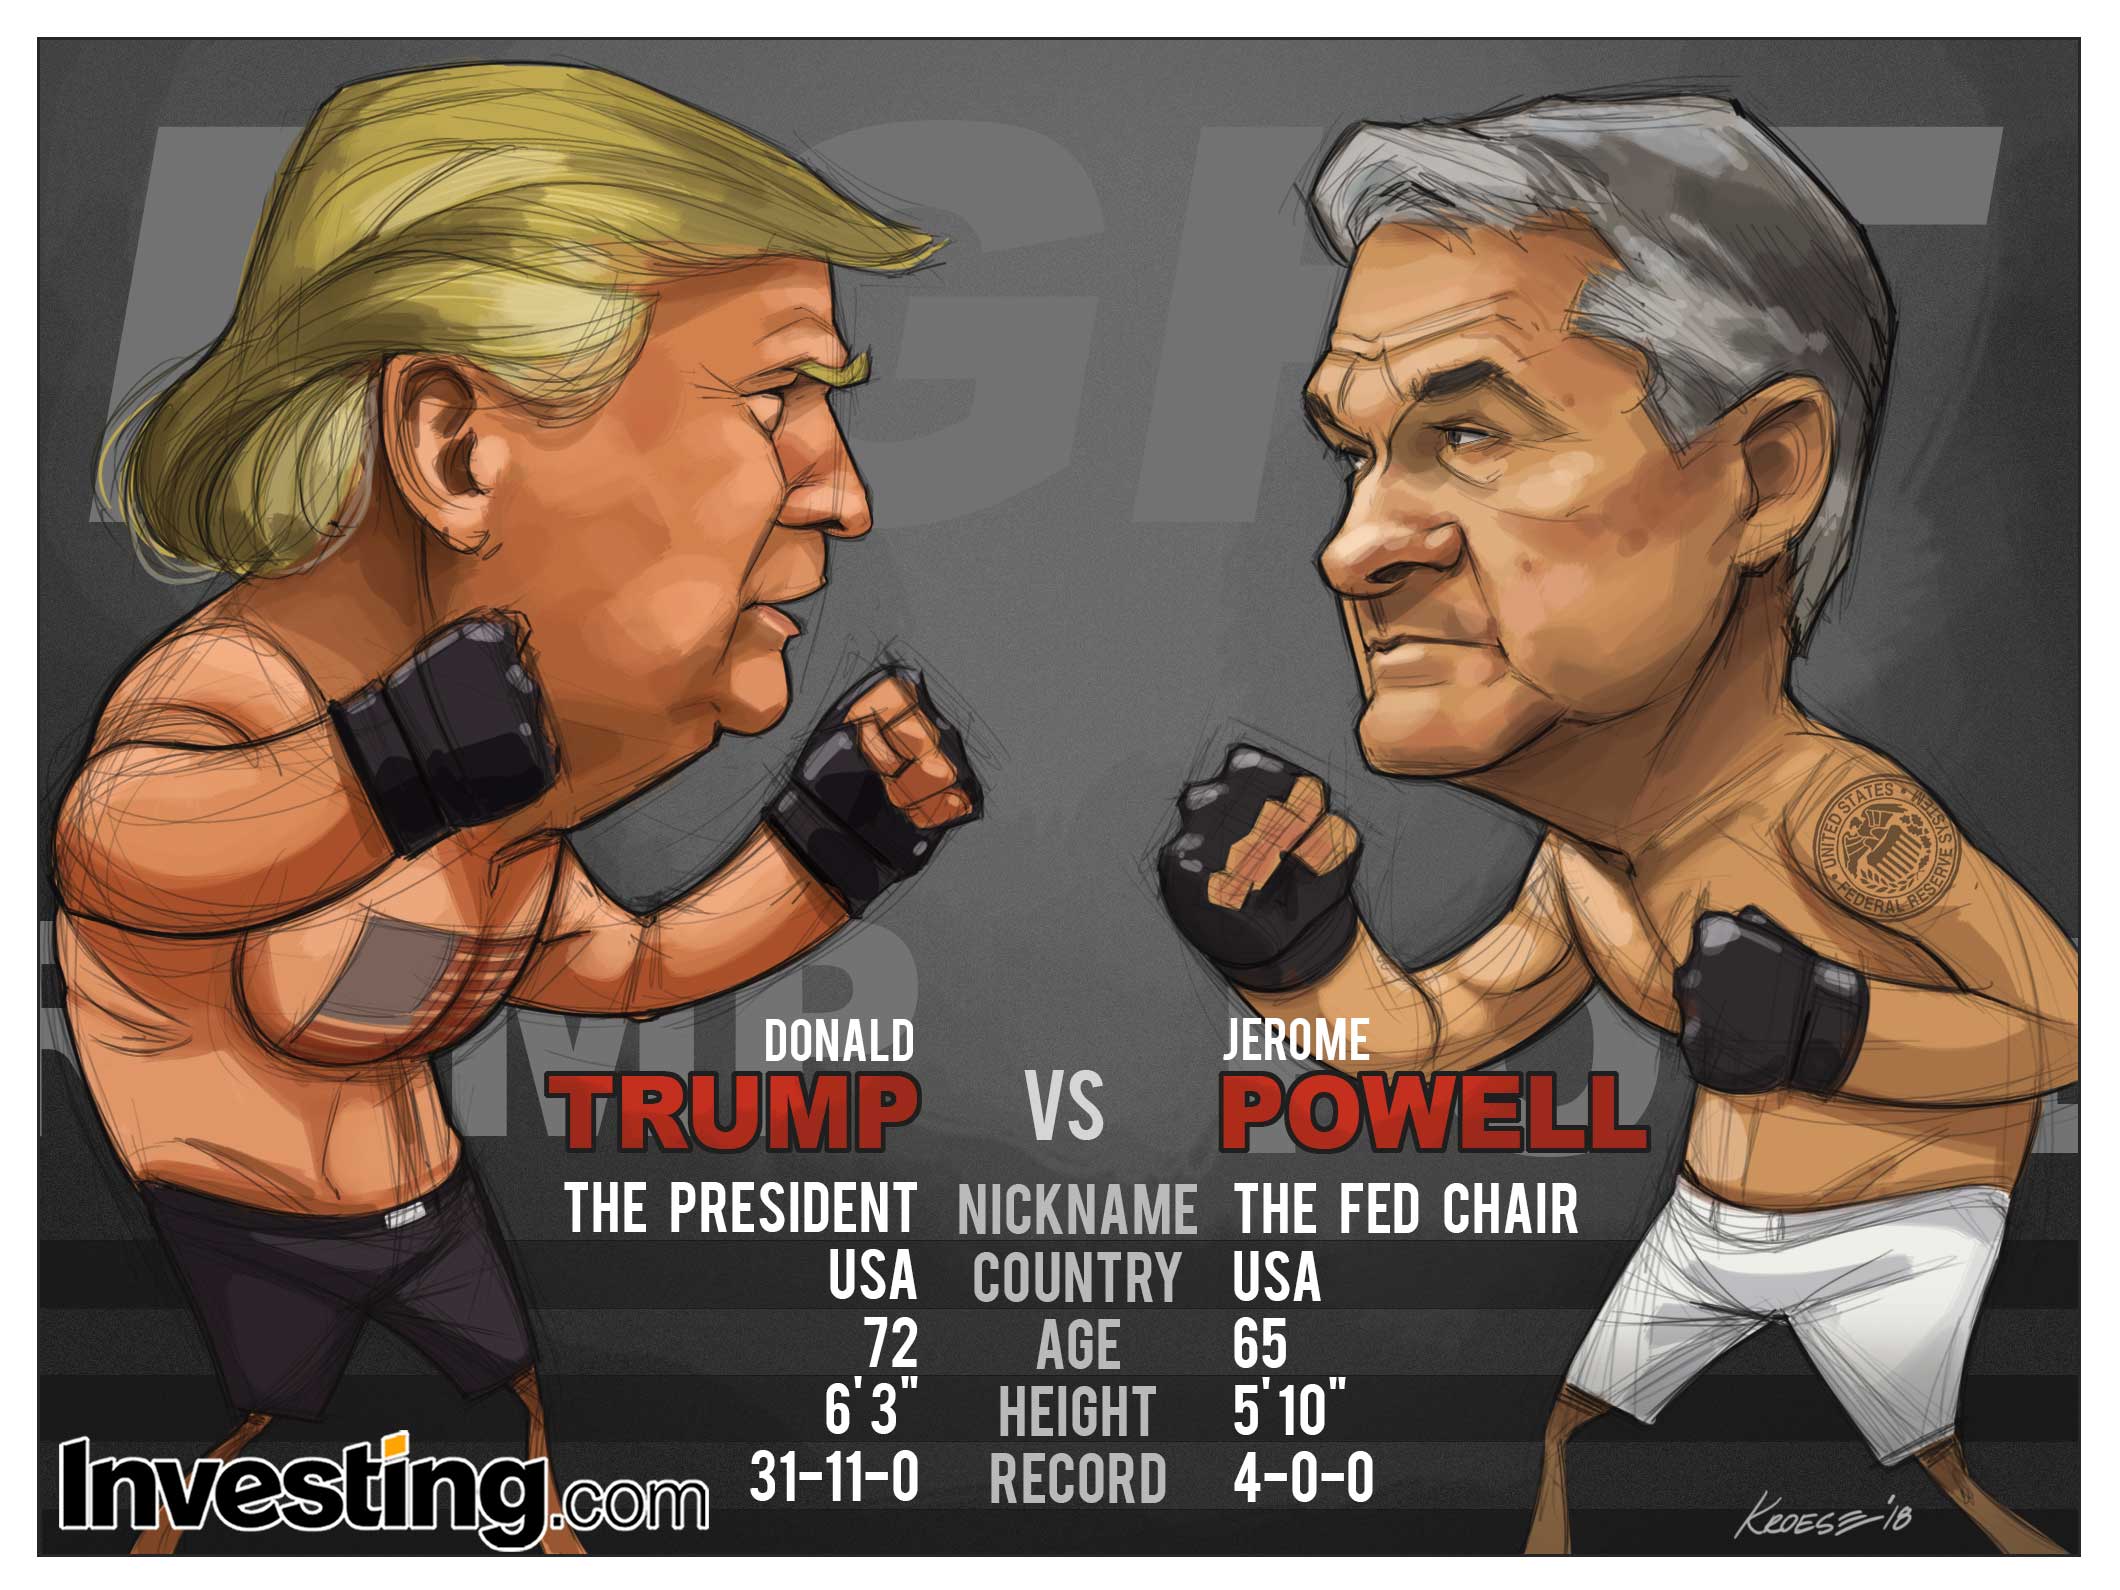 O confronto entre o Presidente Trump e Powell é o principal evento da semana.